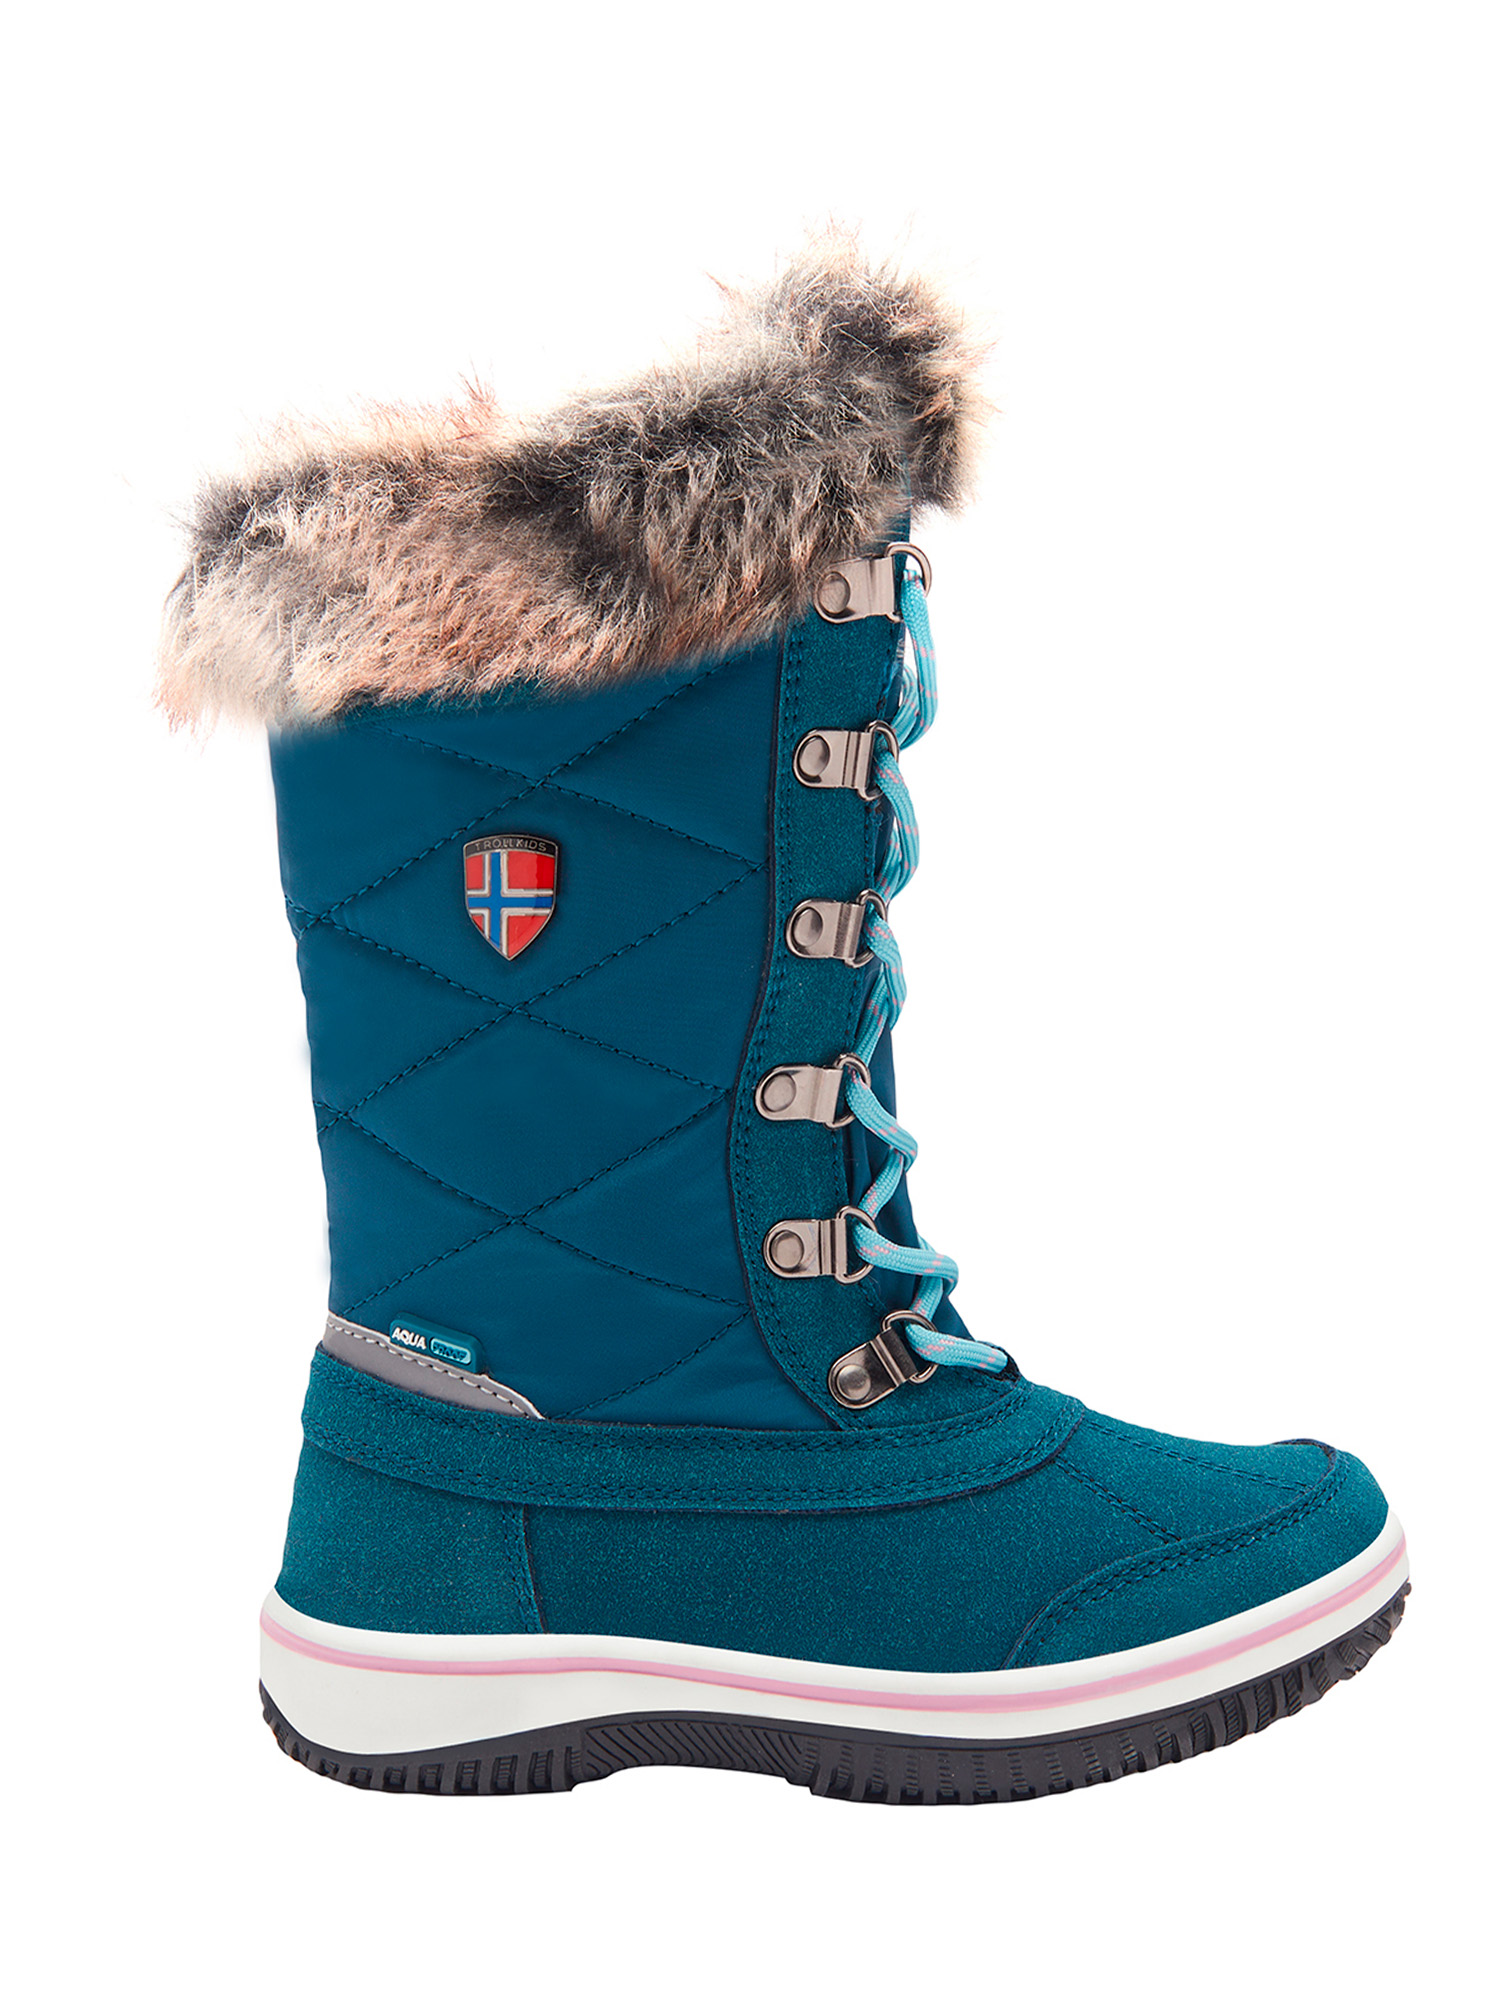 Ботинки Trollkids Girls Holmenkollen Snow Boots, голубой, 39